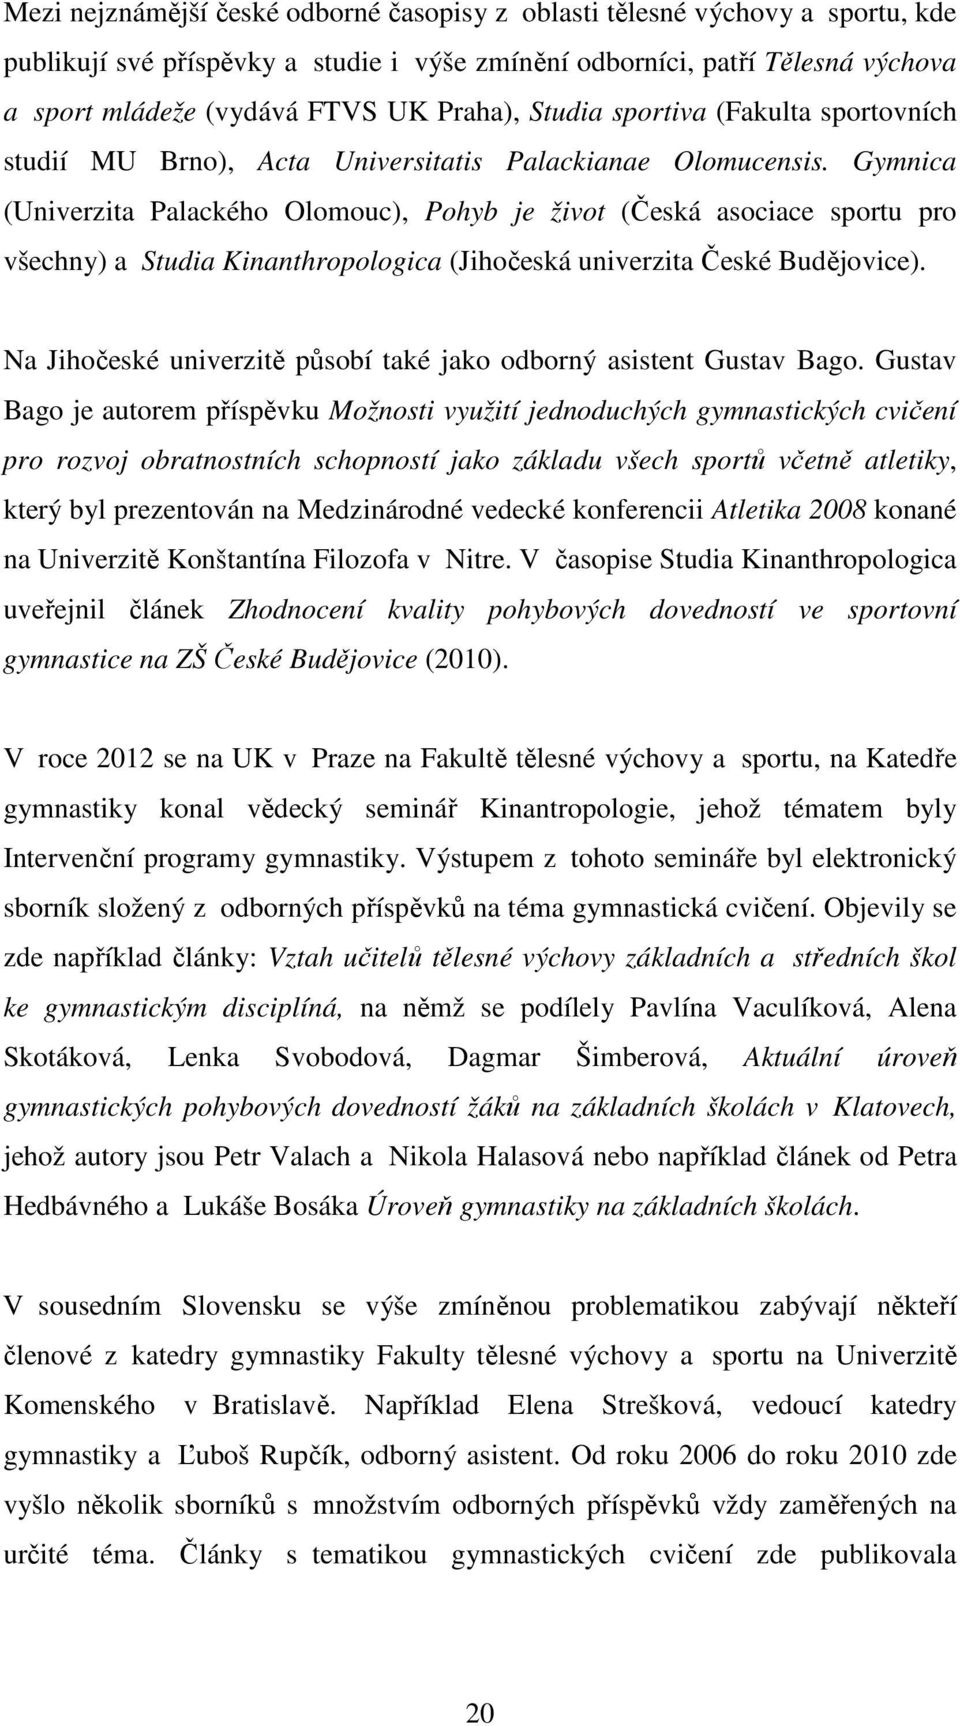 Gymnica (Univerzita Palackého Olomouc), Pohyb je život (Česká asociace sportu pro všechny) a Studia Kinanthropologica (Jihočeská univerzita České Budějovice).